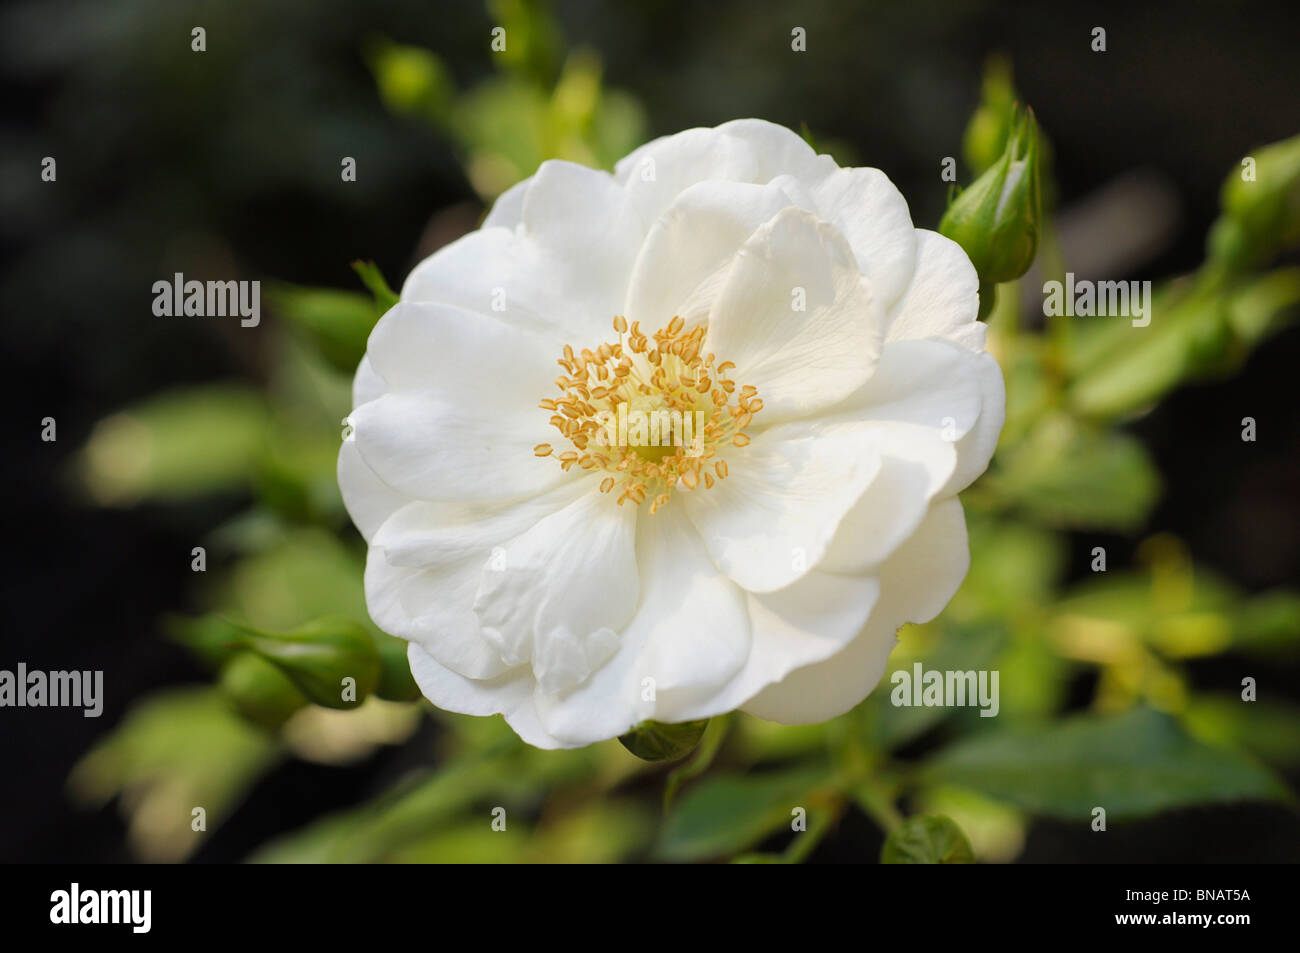 White 'Vigorosa' (Vigorous) Rose Stock Photo